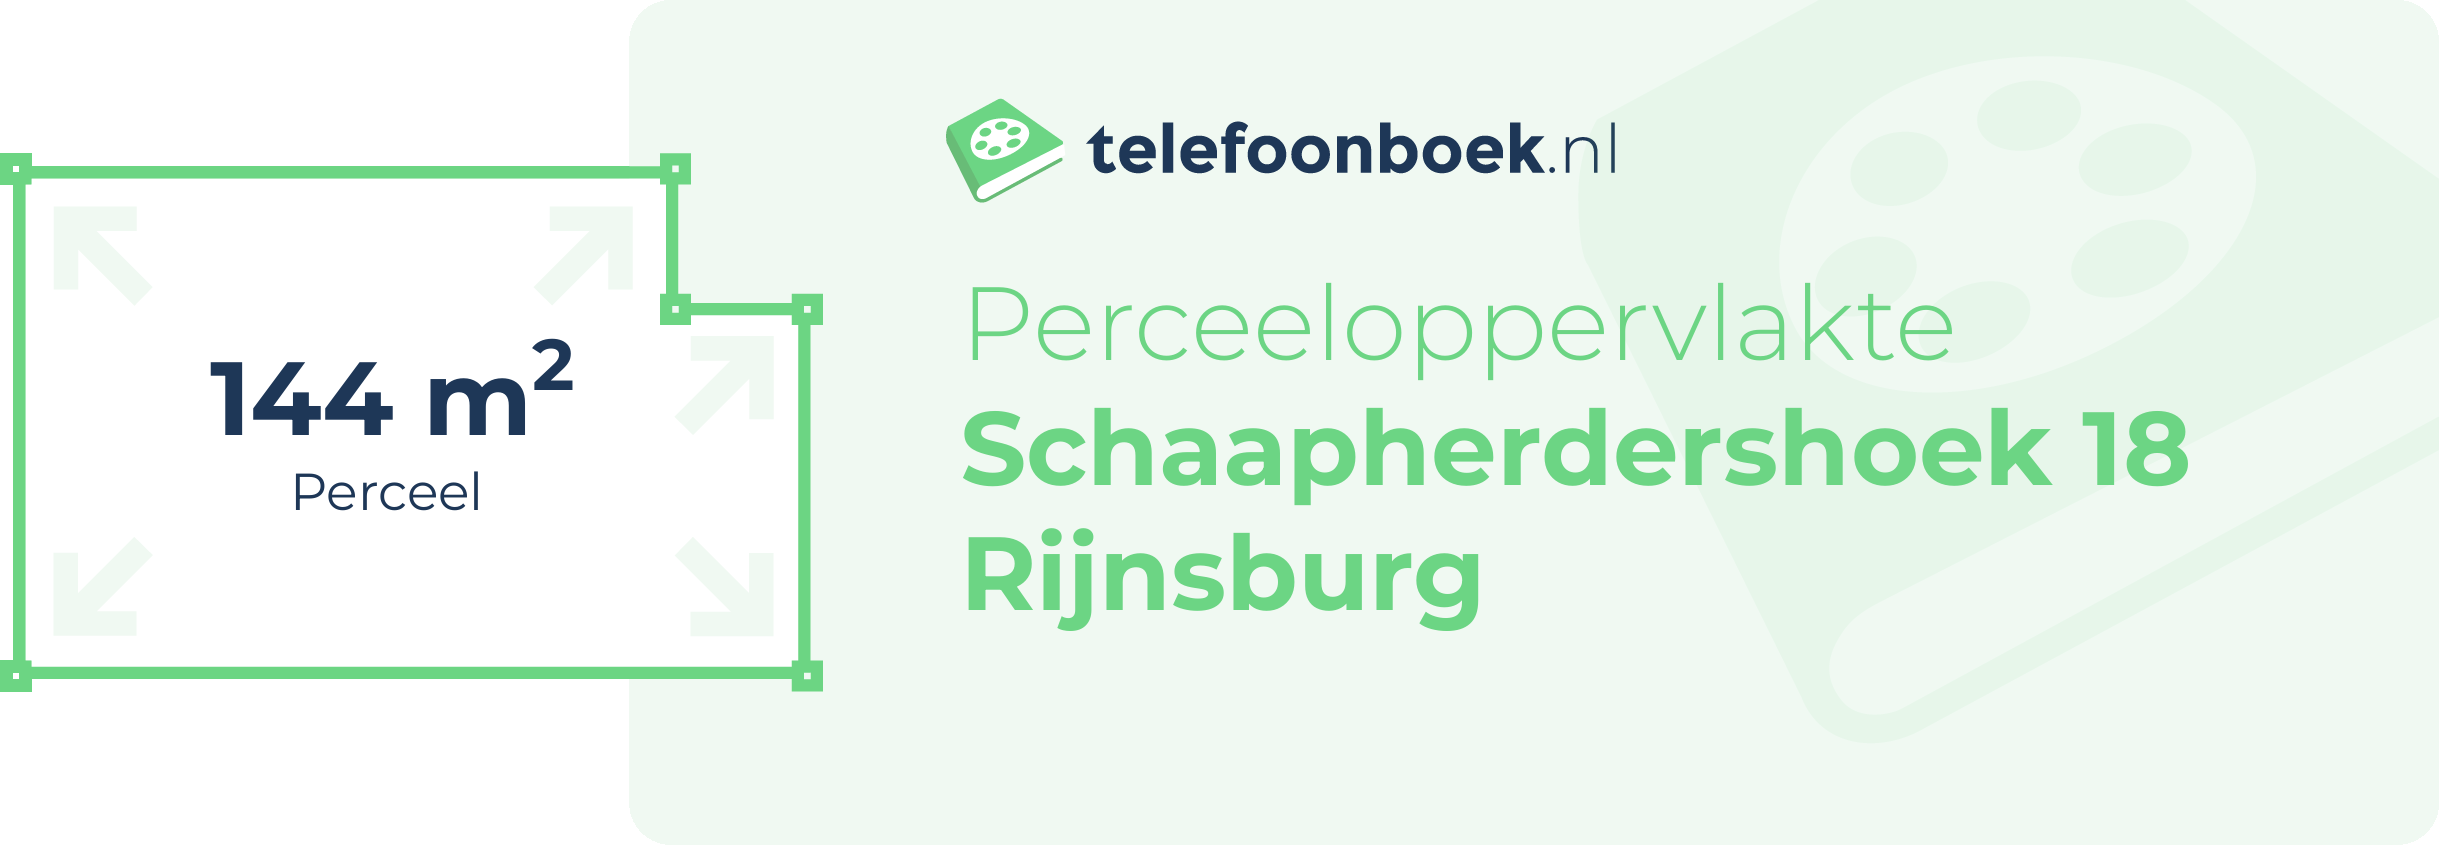 Perceeloppervlakte Schaapherdershoek 18 Rijnsburg